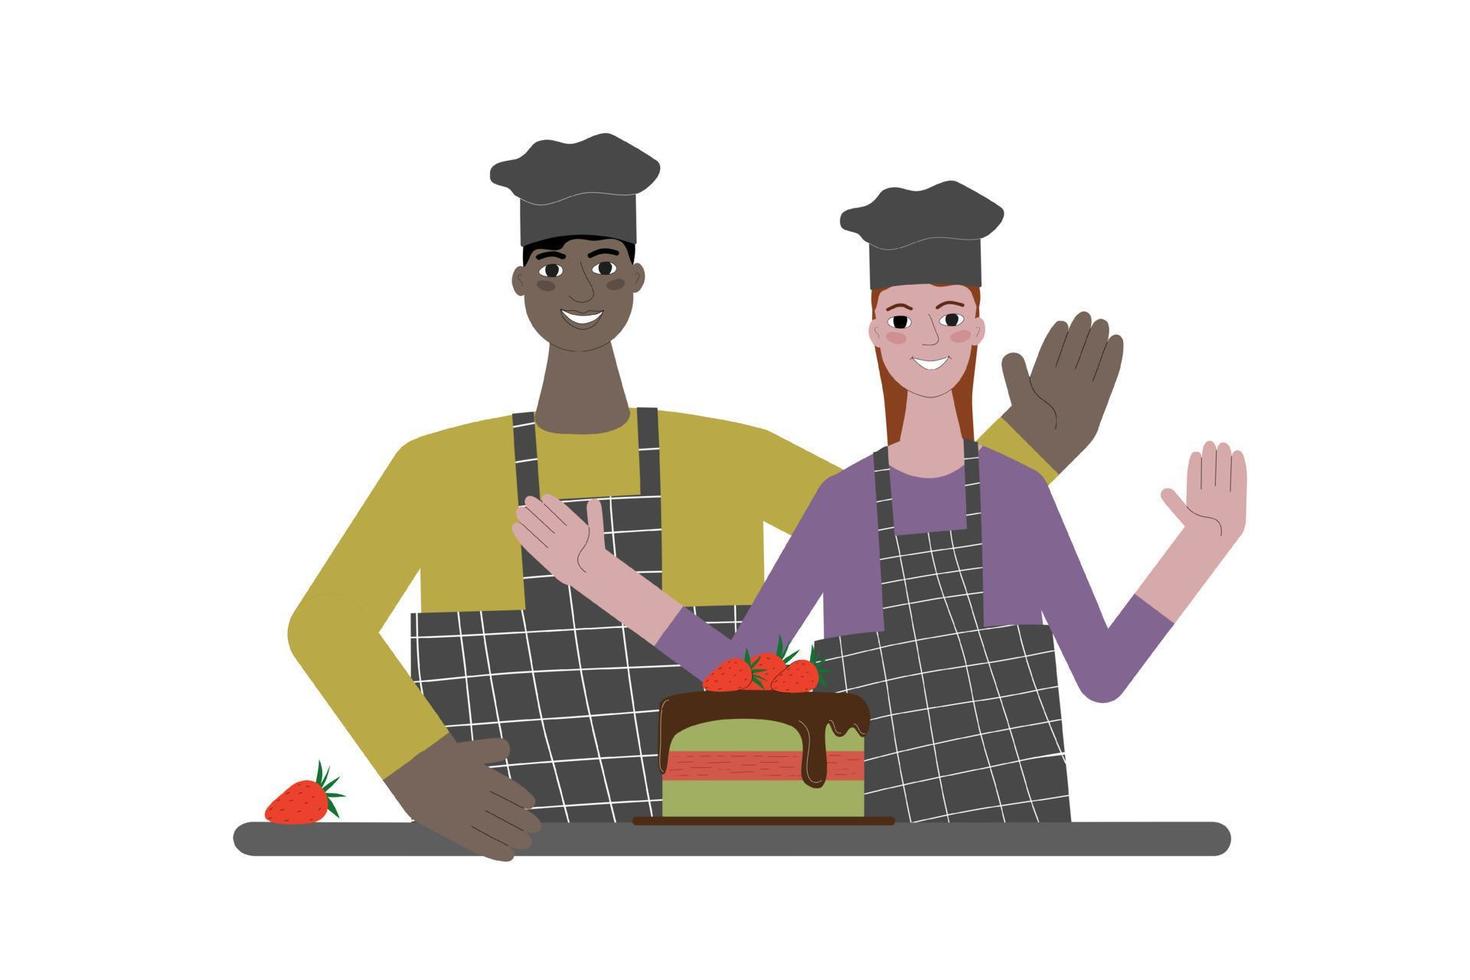 deux chefs cuisiniers, un homme à la peau noire et une femme aux cheveux roux, se tiennent à table avec un gâteau aux fraises à la pistache, sourient et renoncent à leurs mains. illustration vectorielle de style plat. vecteur